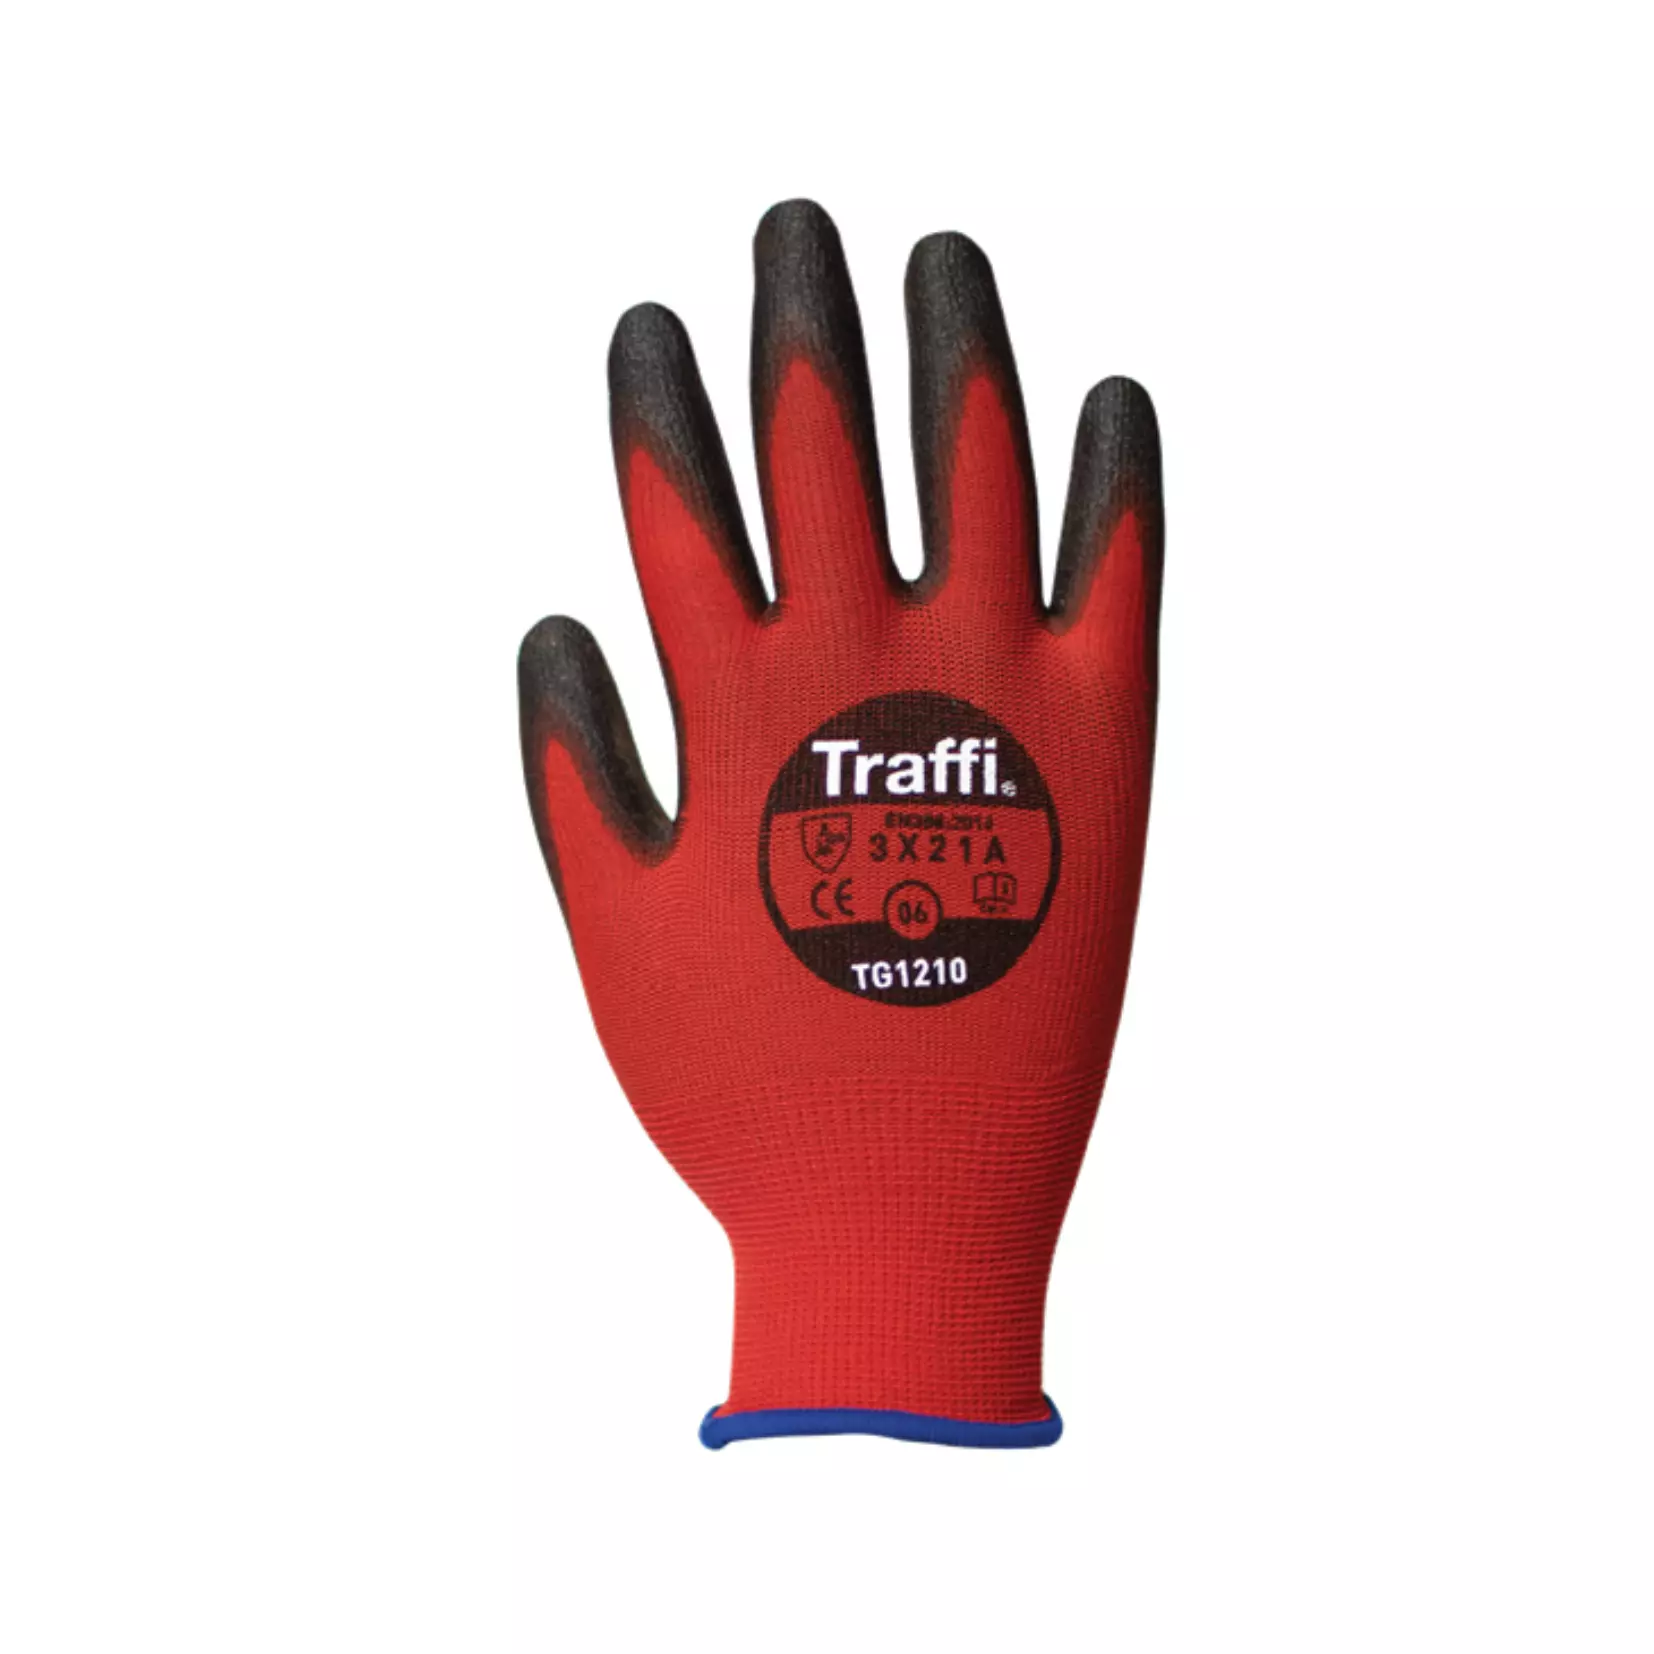 Traffi Class A Cut resistant gloves